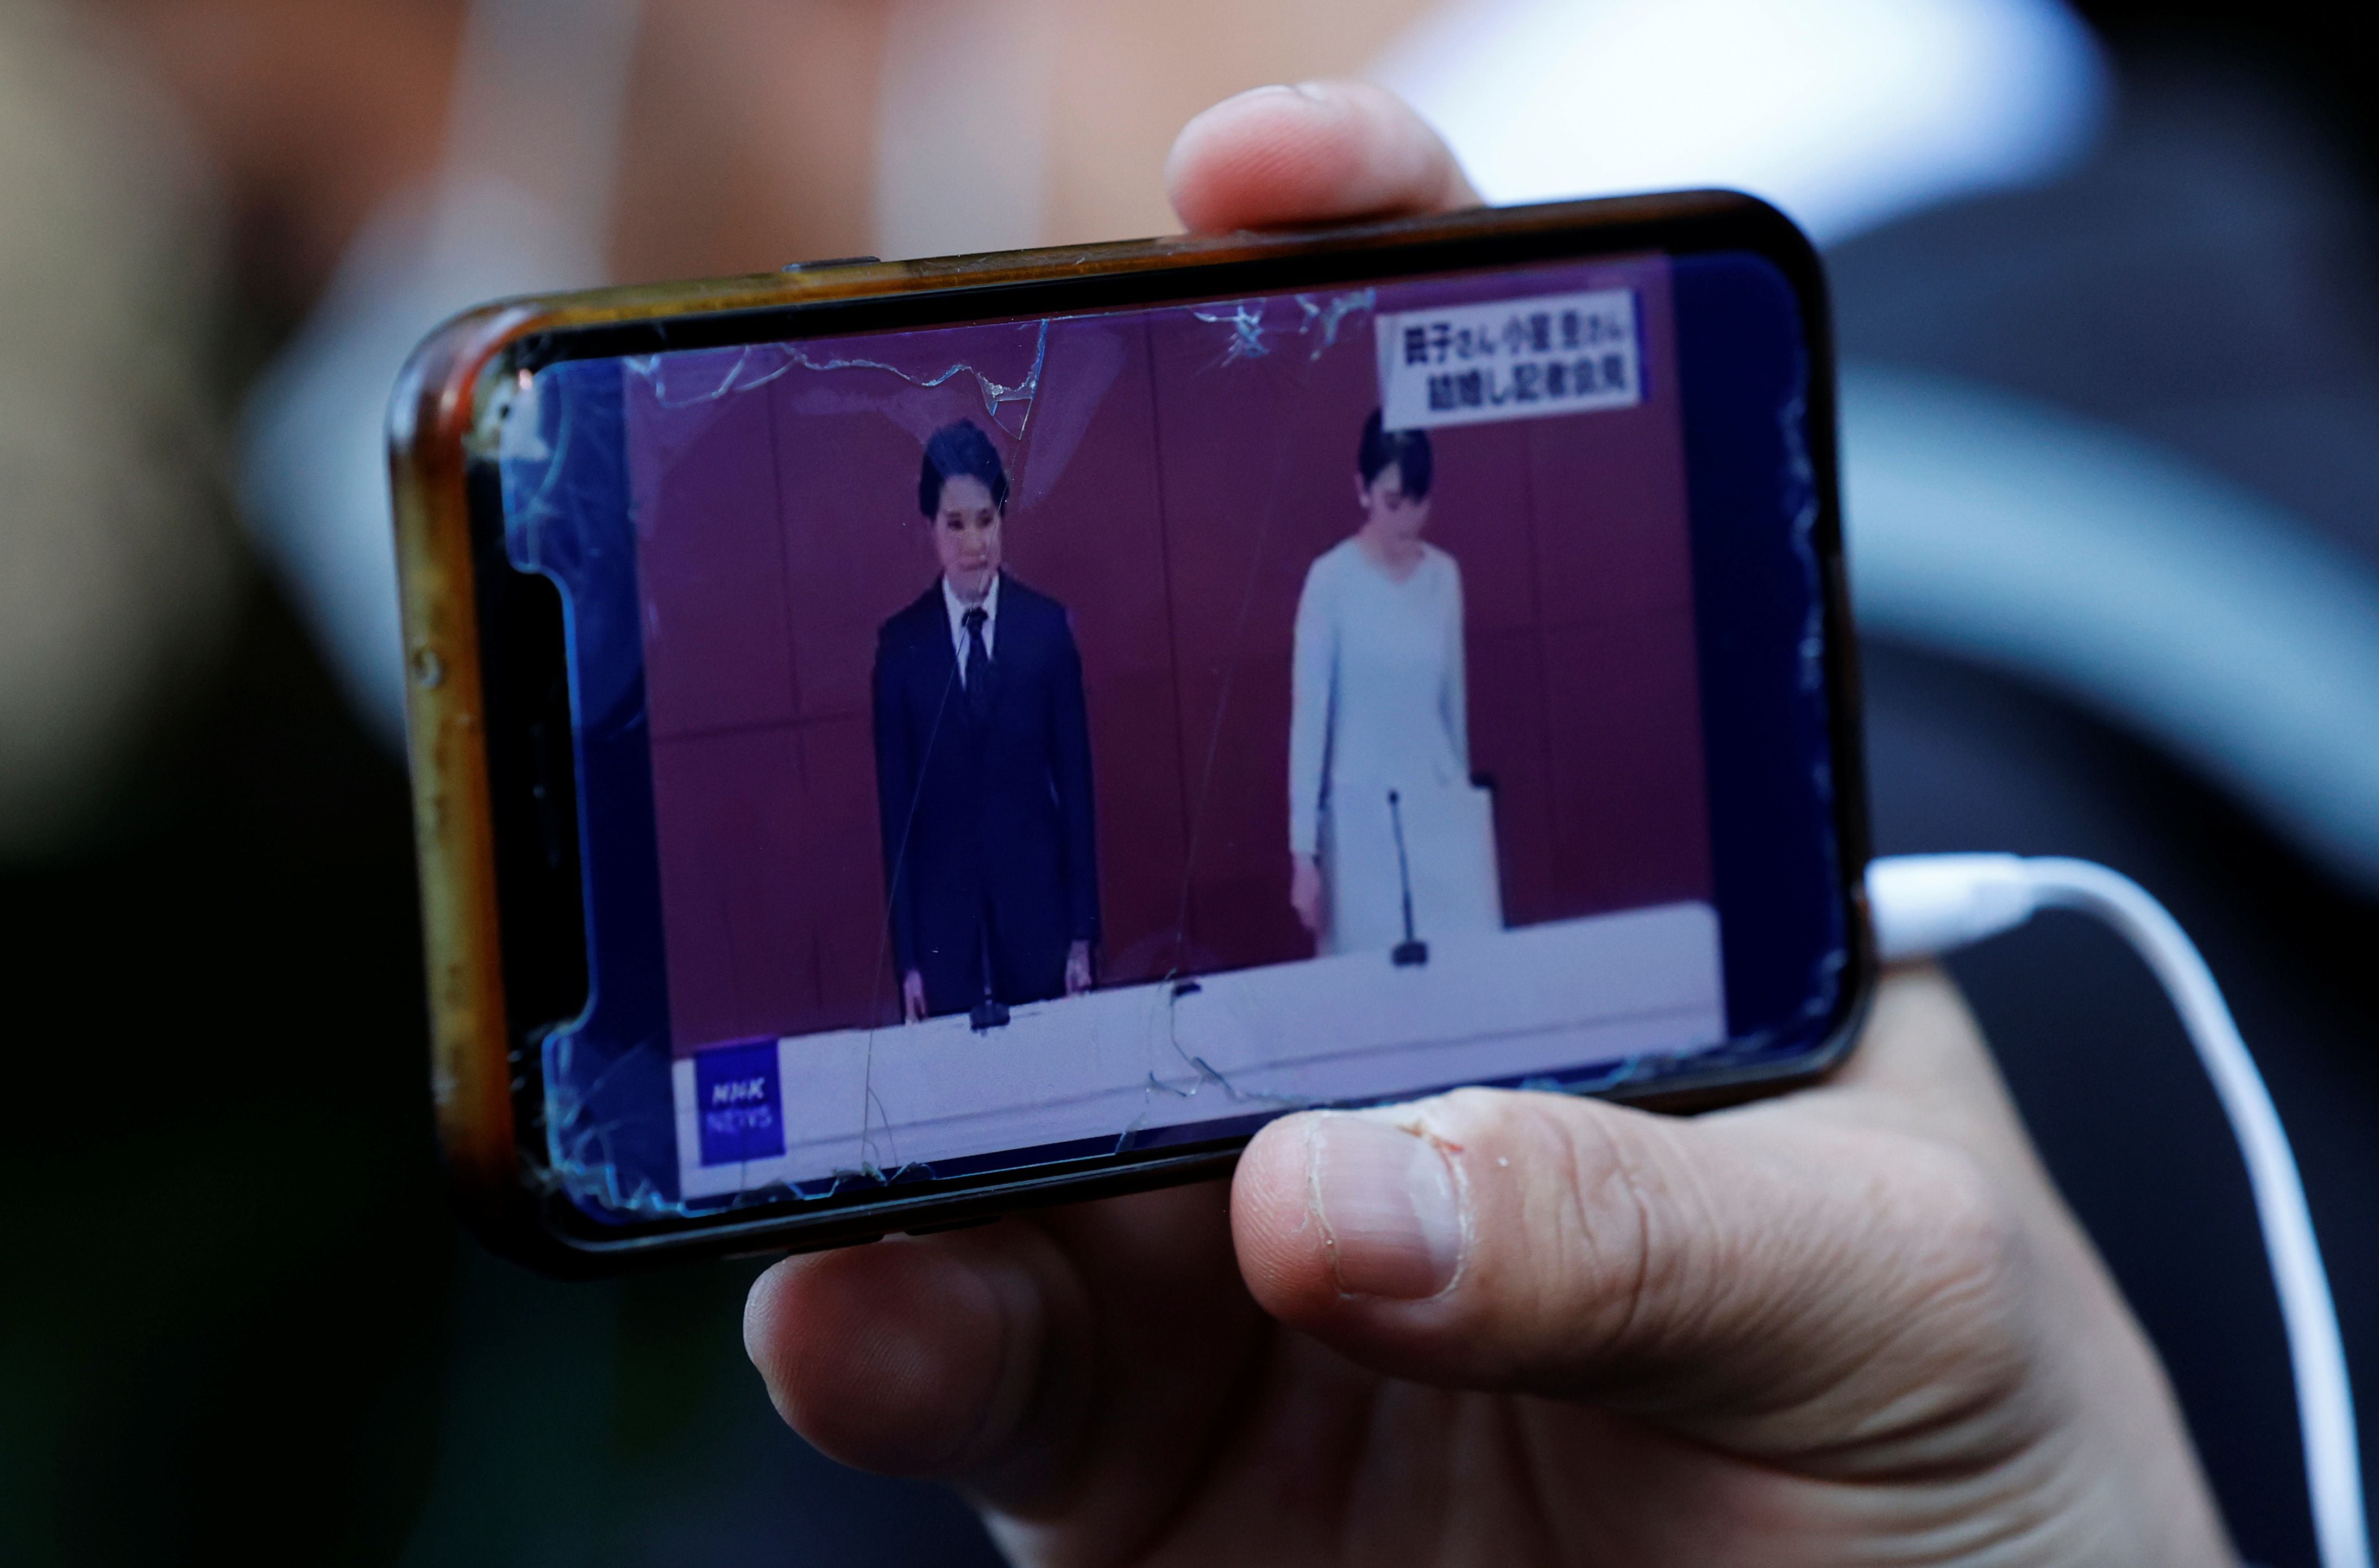 Un hombre mira una transmisión en vivo de la conferencia de prensa de la princesa Mako de Japón y su esposo Kei Komuro en un teléfono inteligente, afuera de un hotel donde se llevará a cabo la conferencia de noticias en Tokio, Japón, el 26 de octubre de 2021. REUTERS / Kim Kyung-Hoon